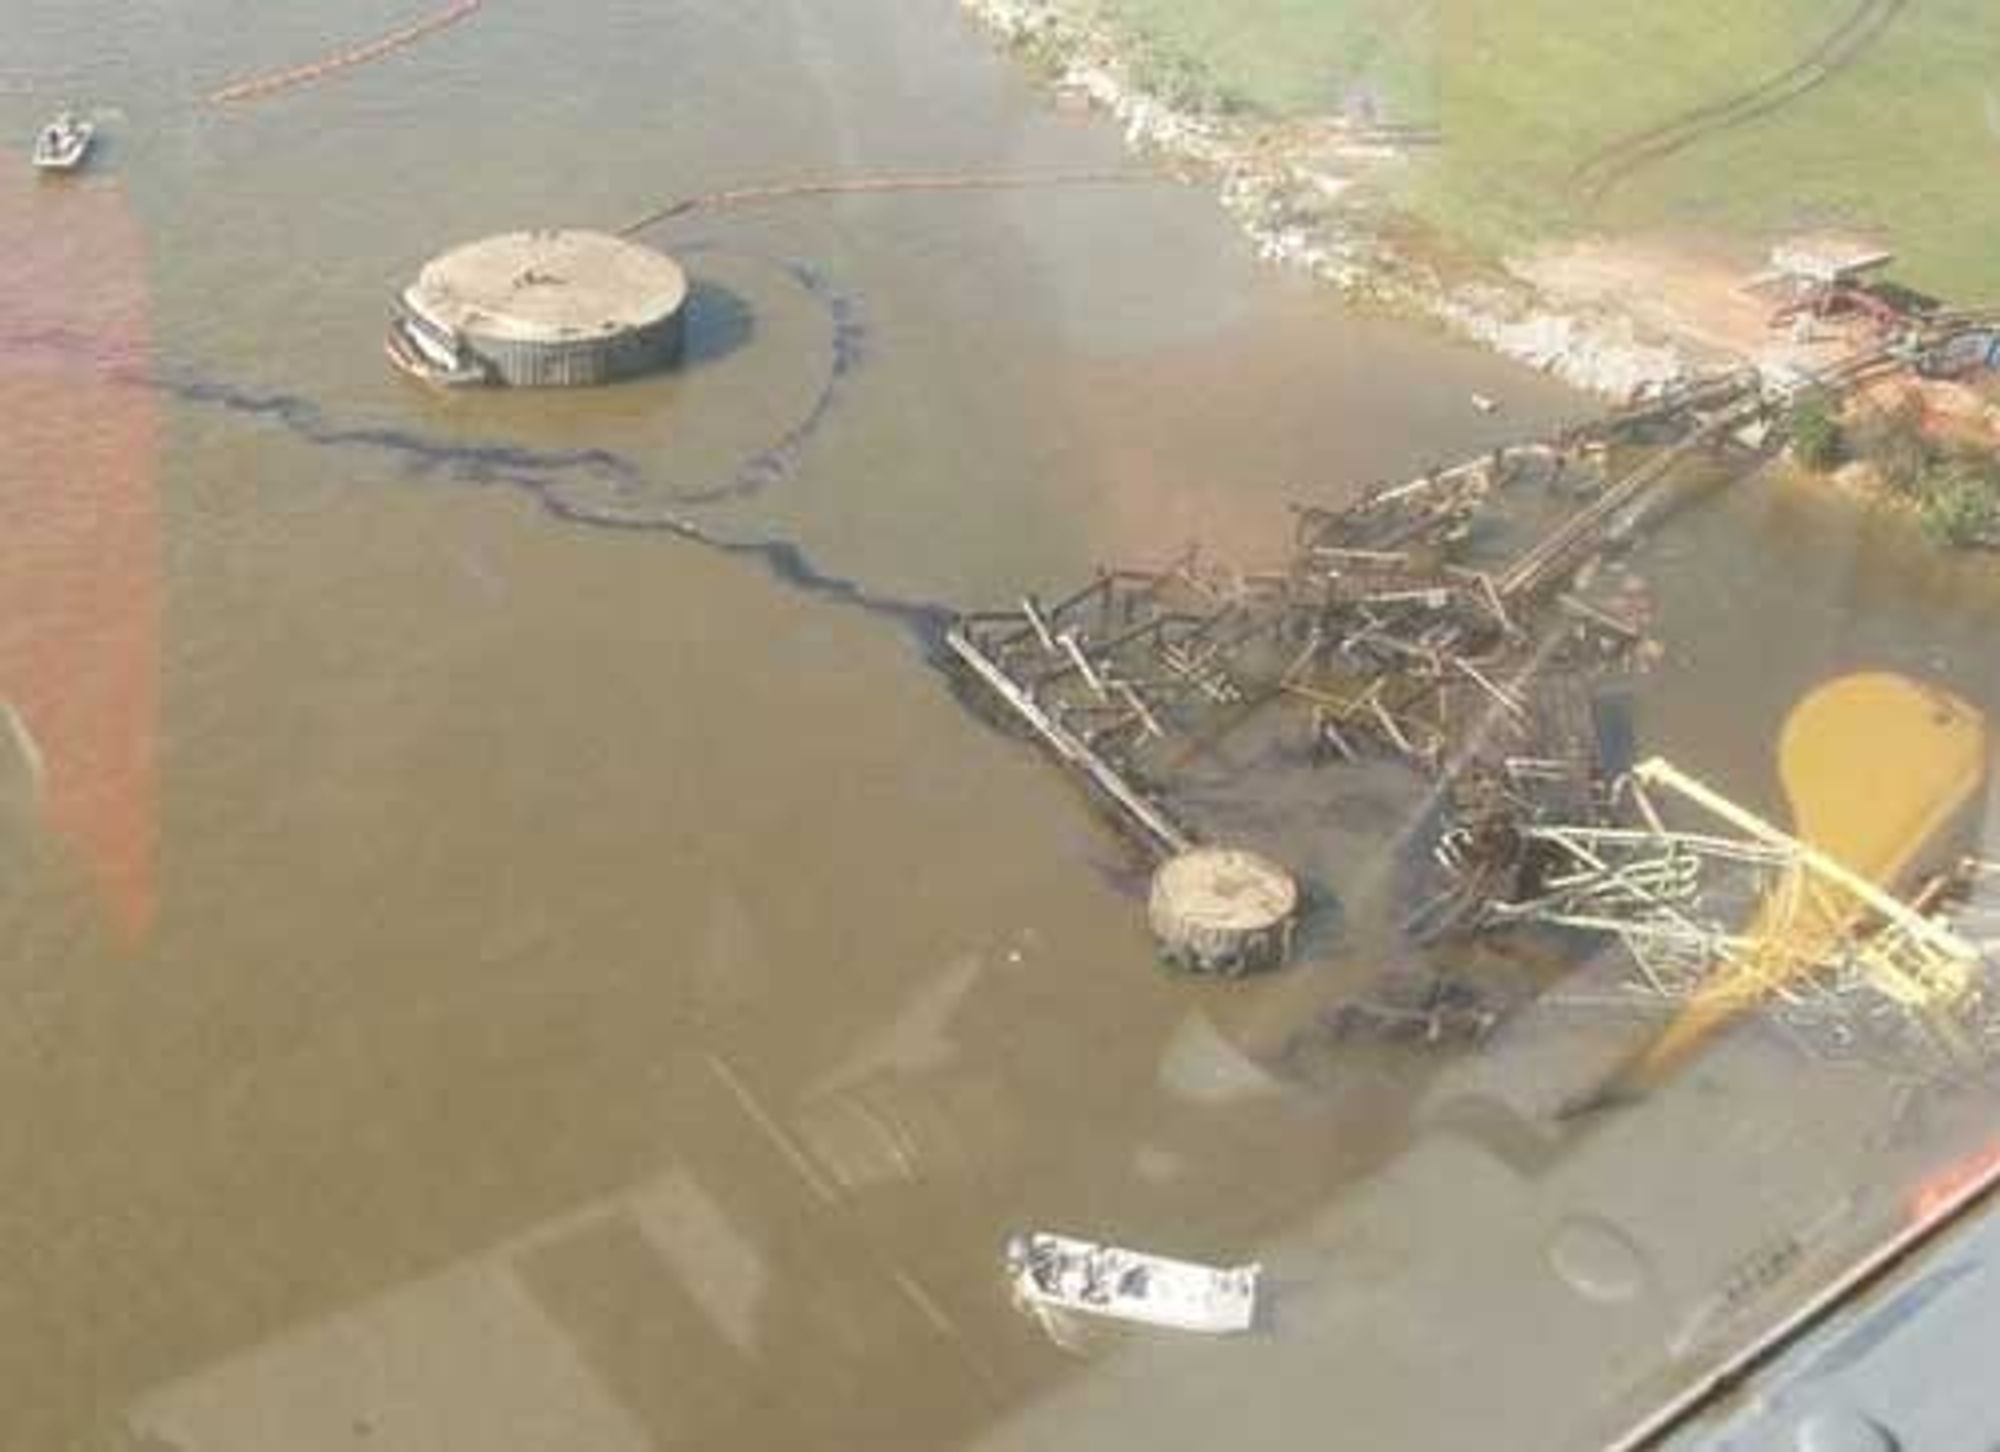 EPA flyr over anlegg der det kan være fare for forurensing. Her inspiserer EPA en oljeterminal ved kysten av Alabama/Mississippi.